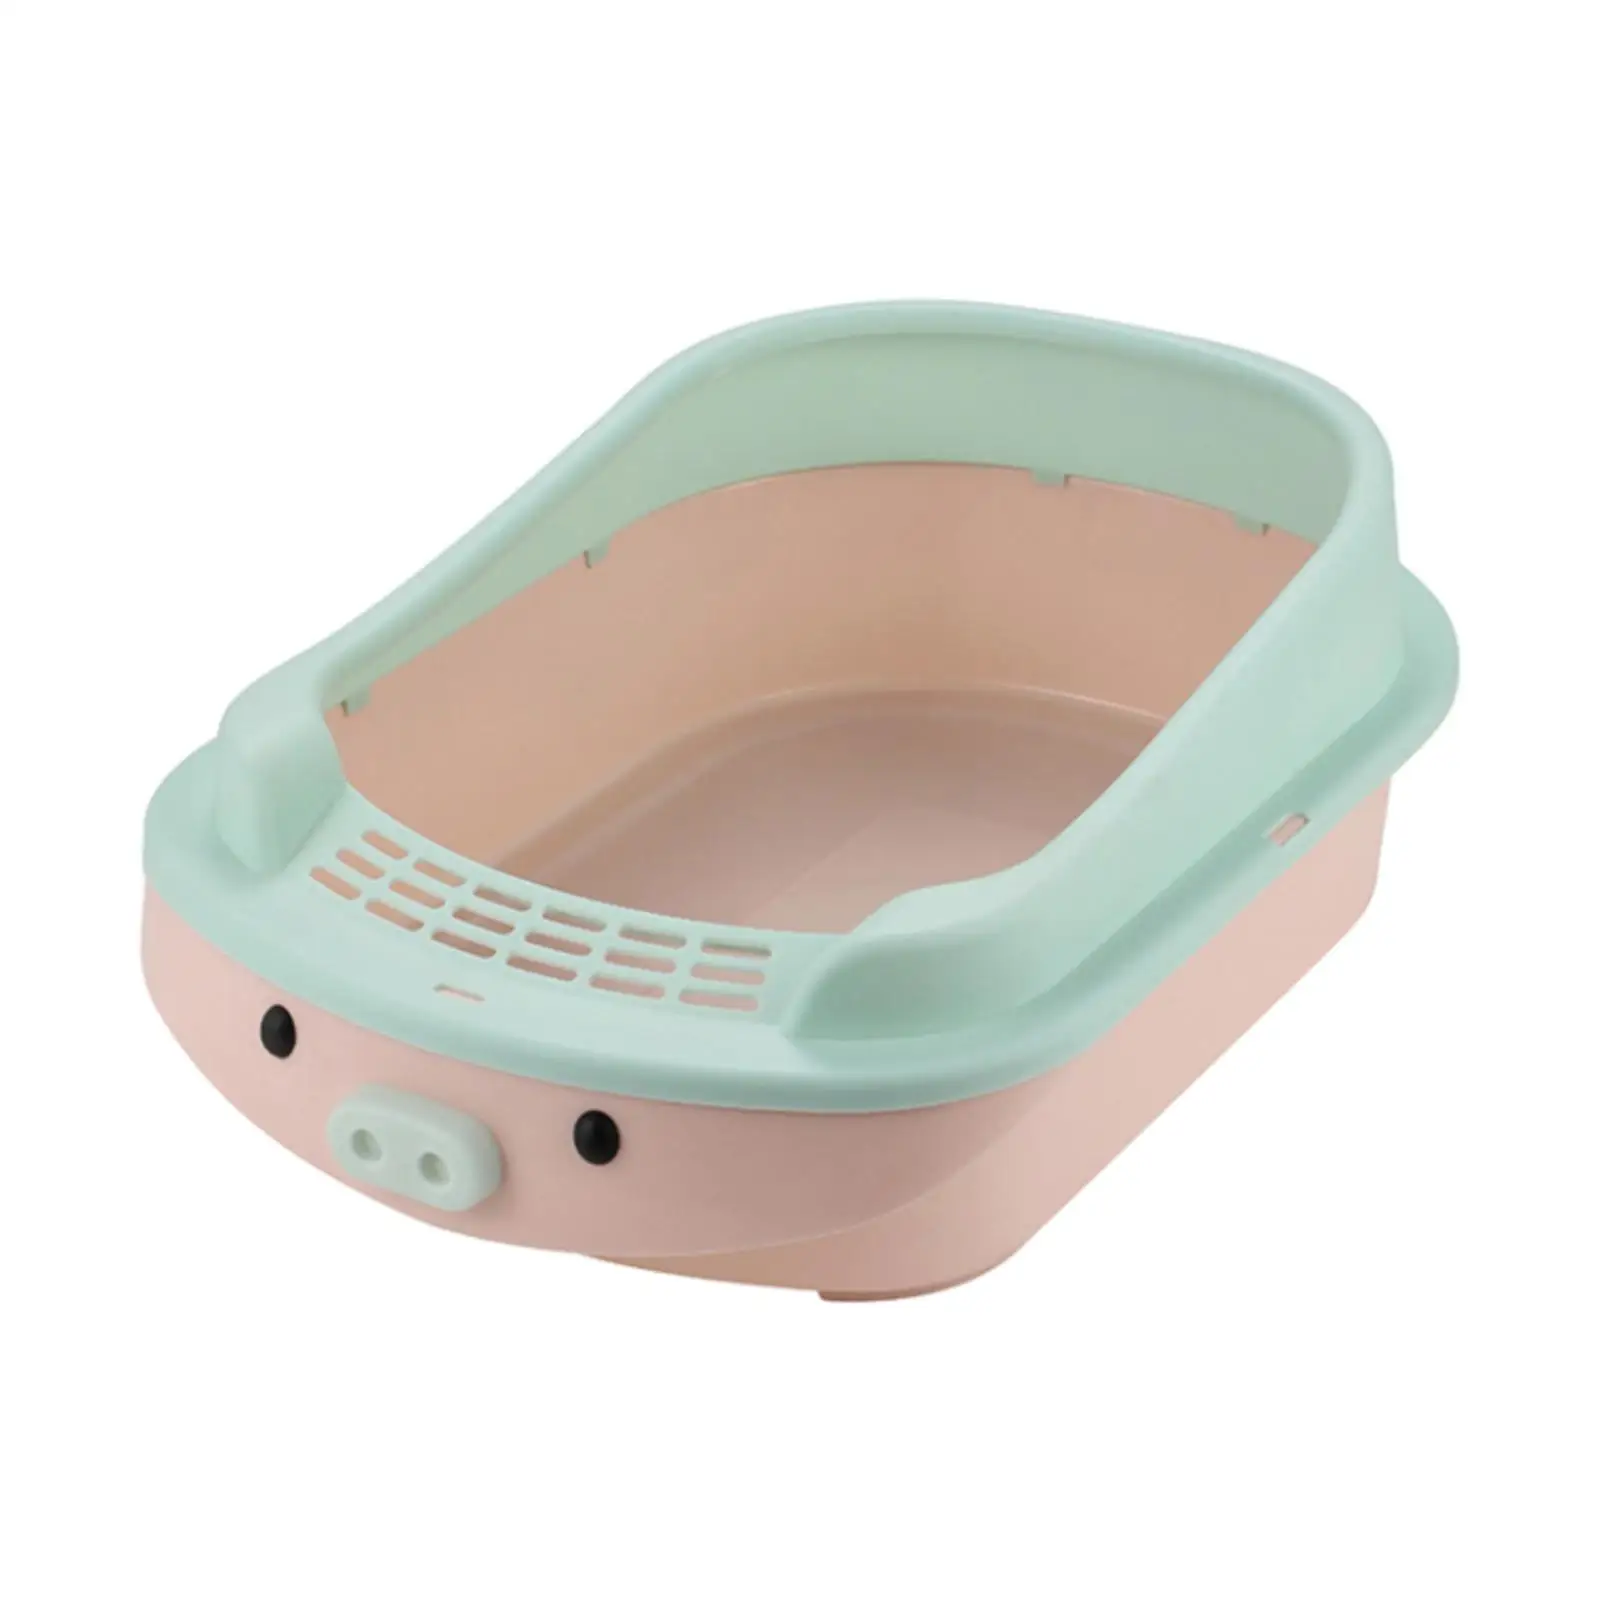 Cat Litter Box, Cats Litter Pan, Bedpan Splashproof Kitten Potty Toilet Cat Sand Box, Open Air High Sided Open Litter Box